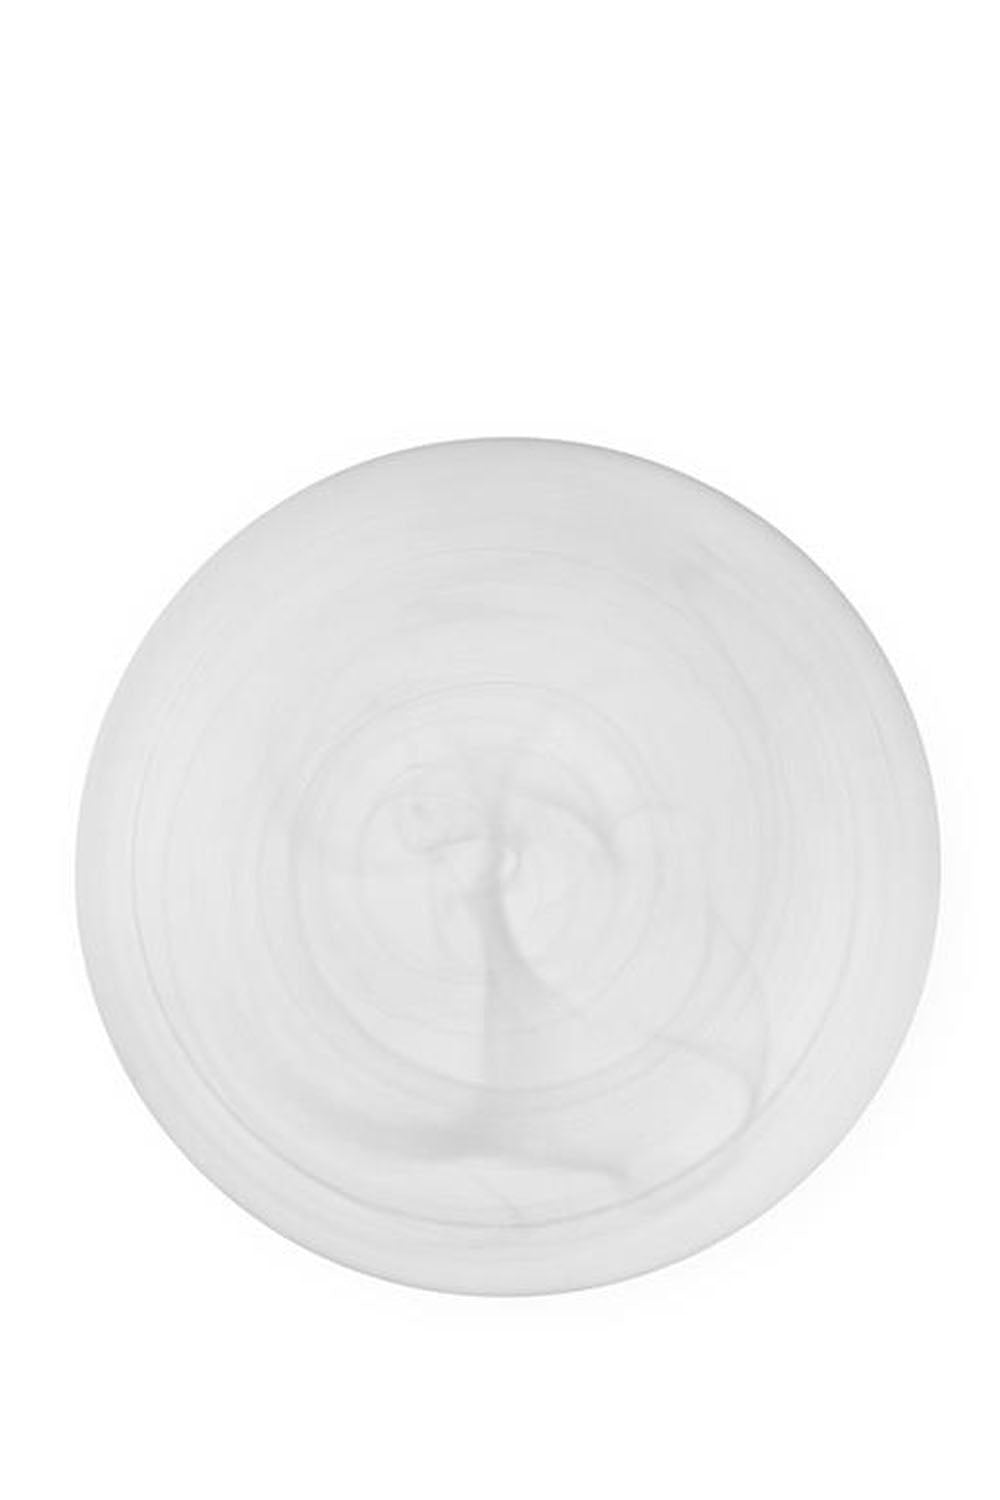 Cosmic Appetiser Plate, 16cm